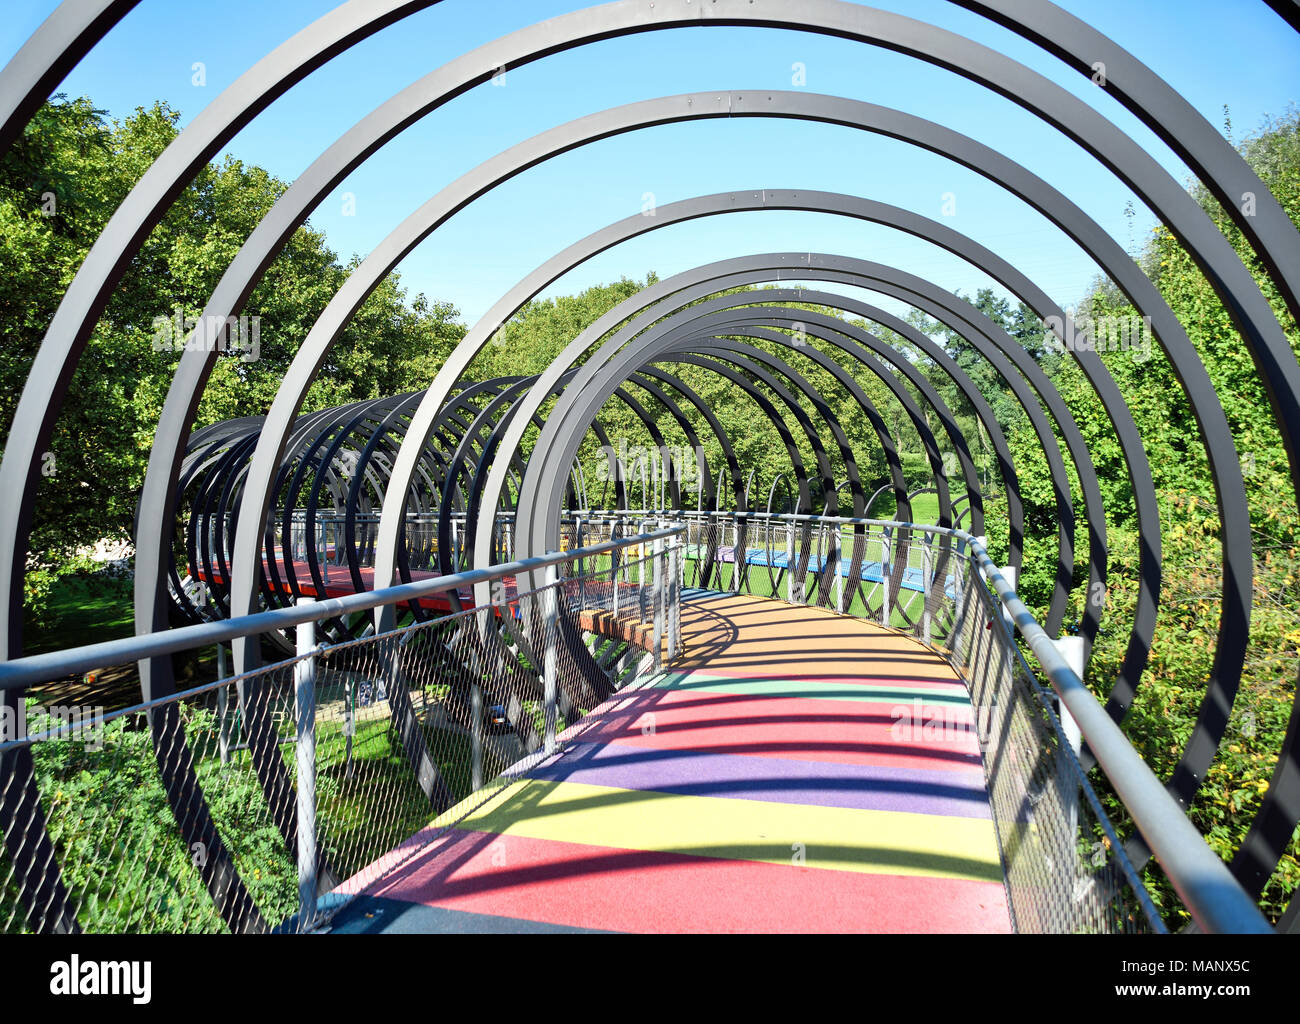 Resortes Slinky puente, Oberhausen Kaisergarten.La arquitectura moderna, el diseño del puente. Foto de stock